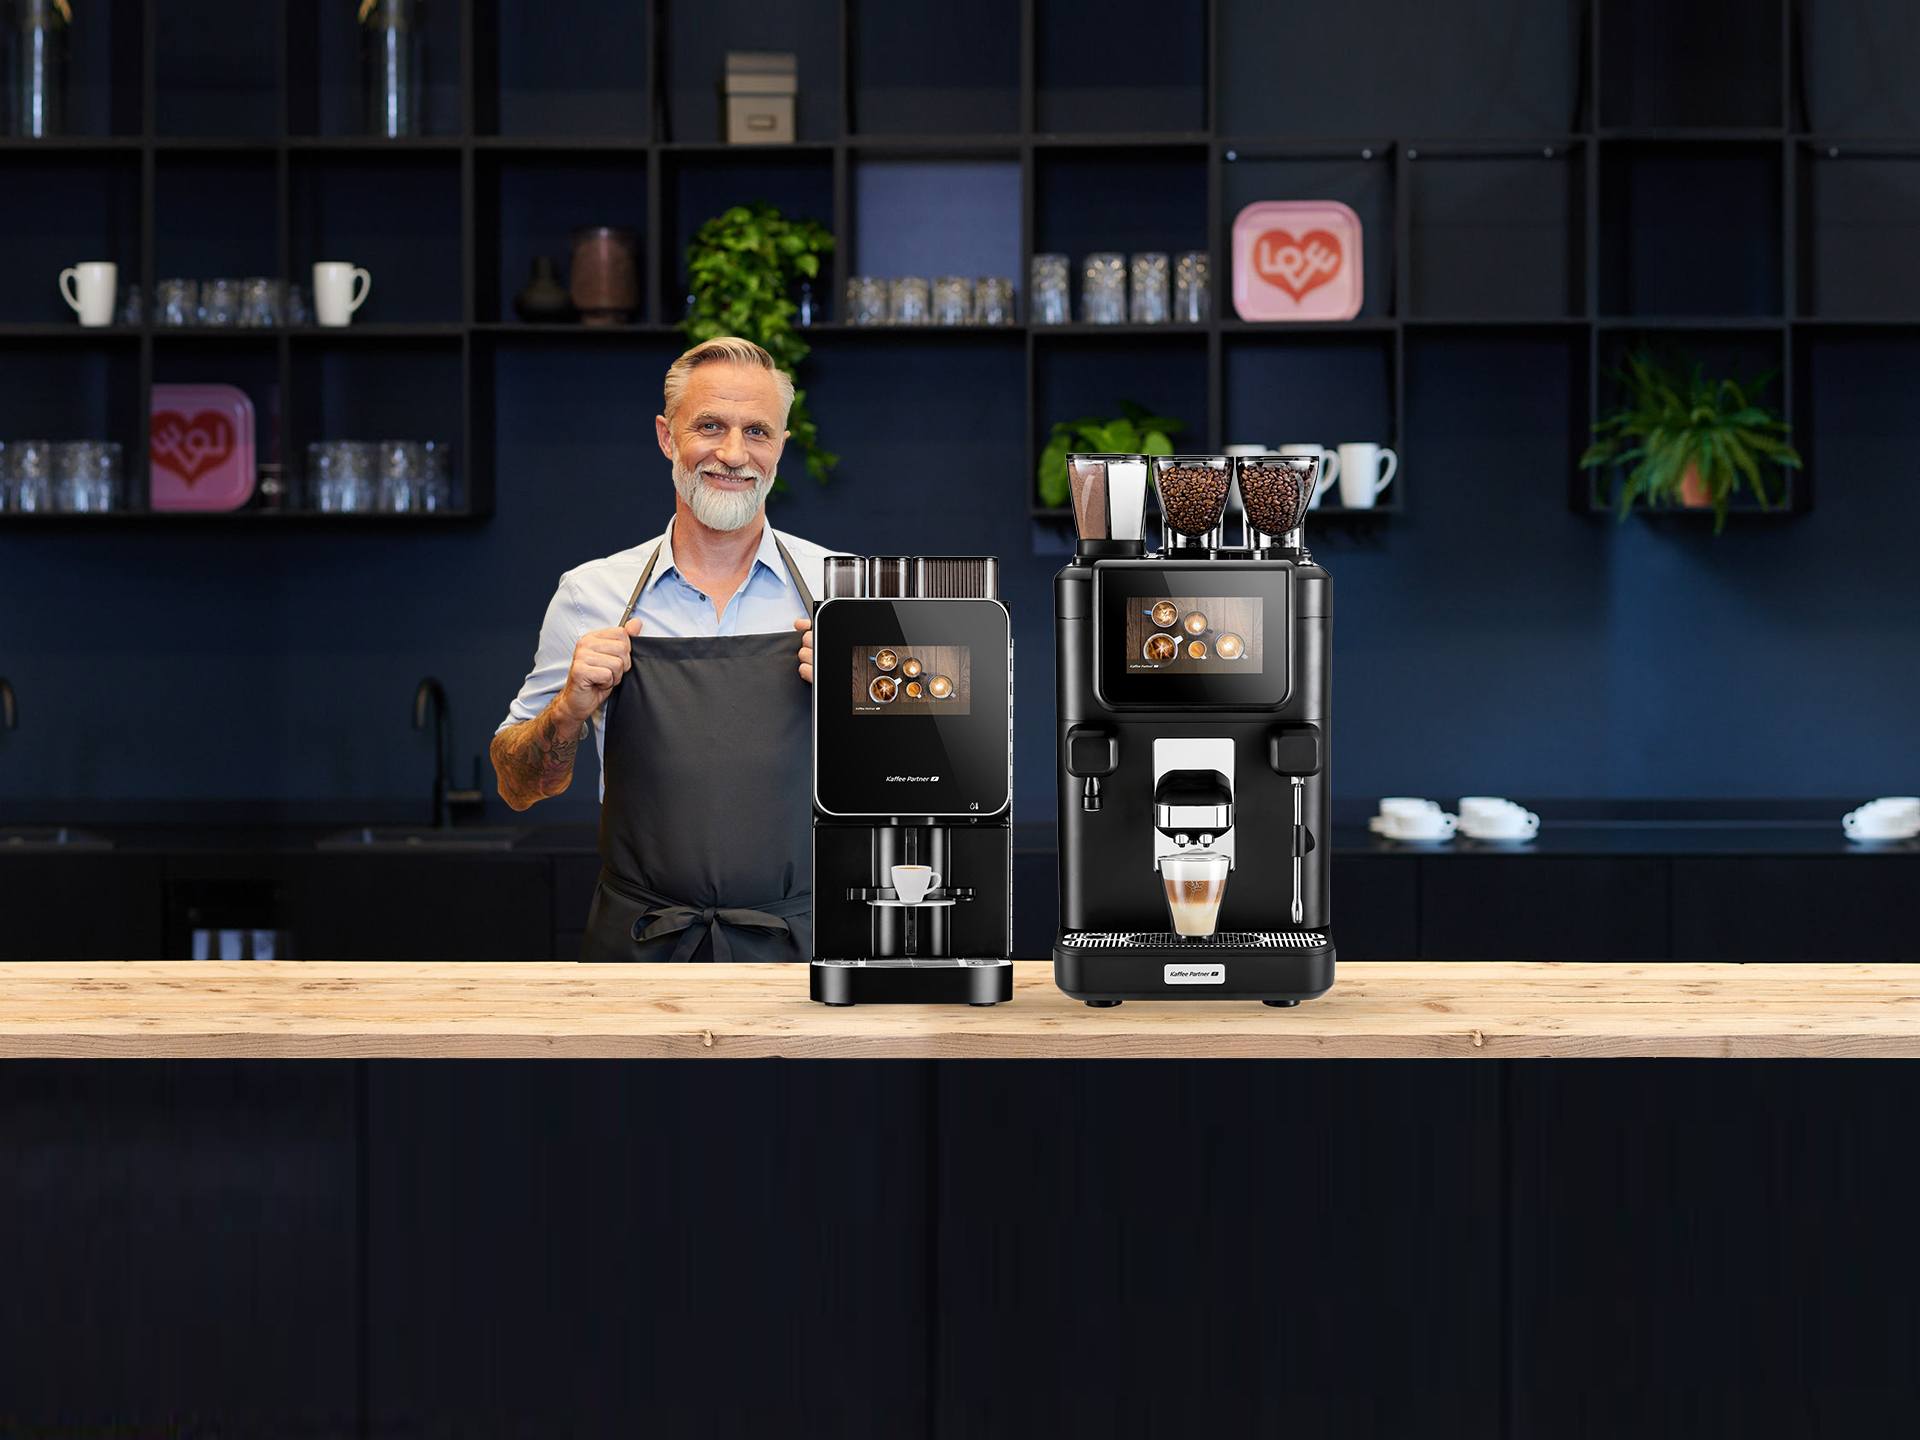 Kaffeevollautomaten: Worauf muss ich achten?